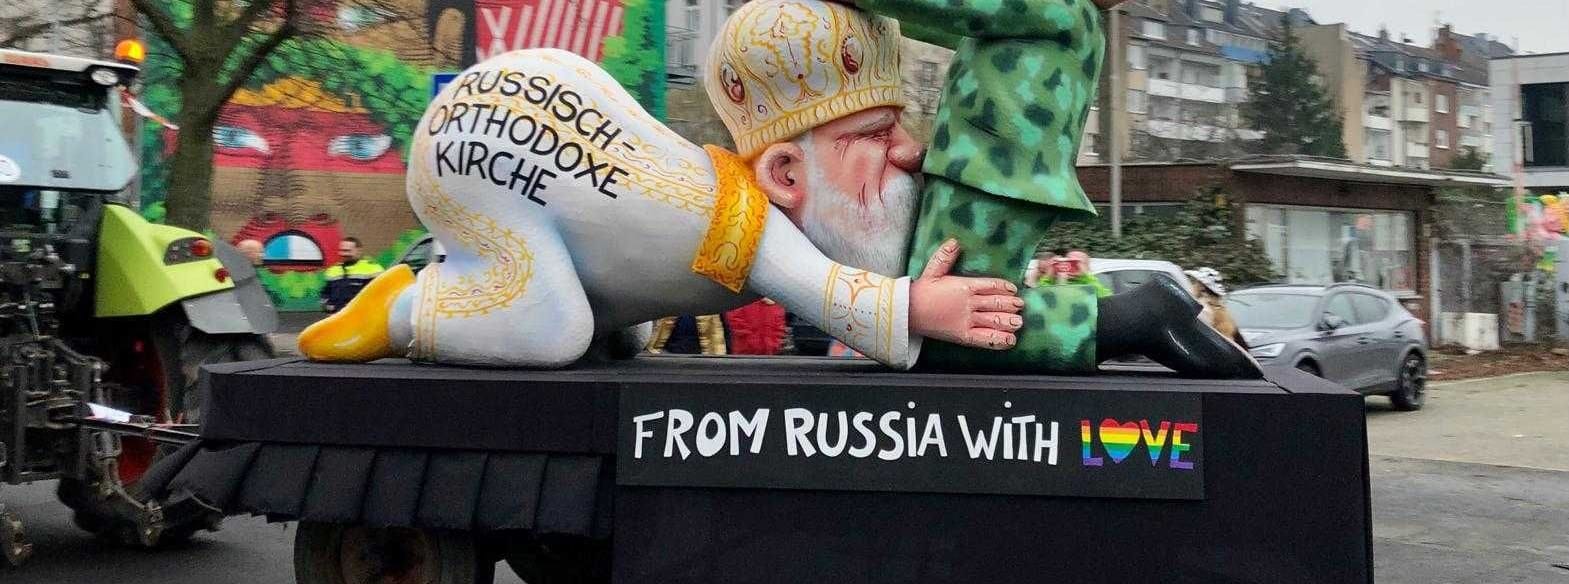 "From Russia with love": Ein Mottowagen zum russischen Präsidenten Putin und der russisch-orthodoxen Kirche. Wie das wohl in Russland aufgenommen wird?